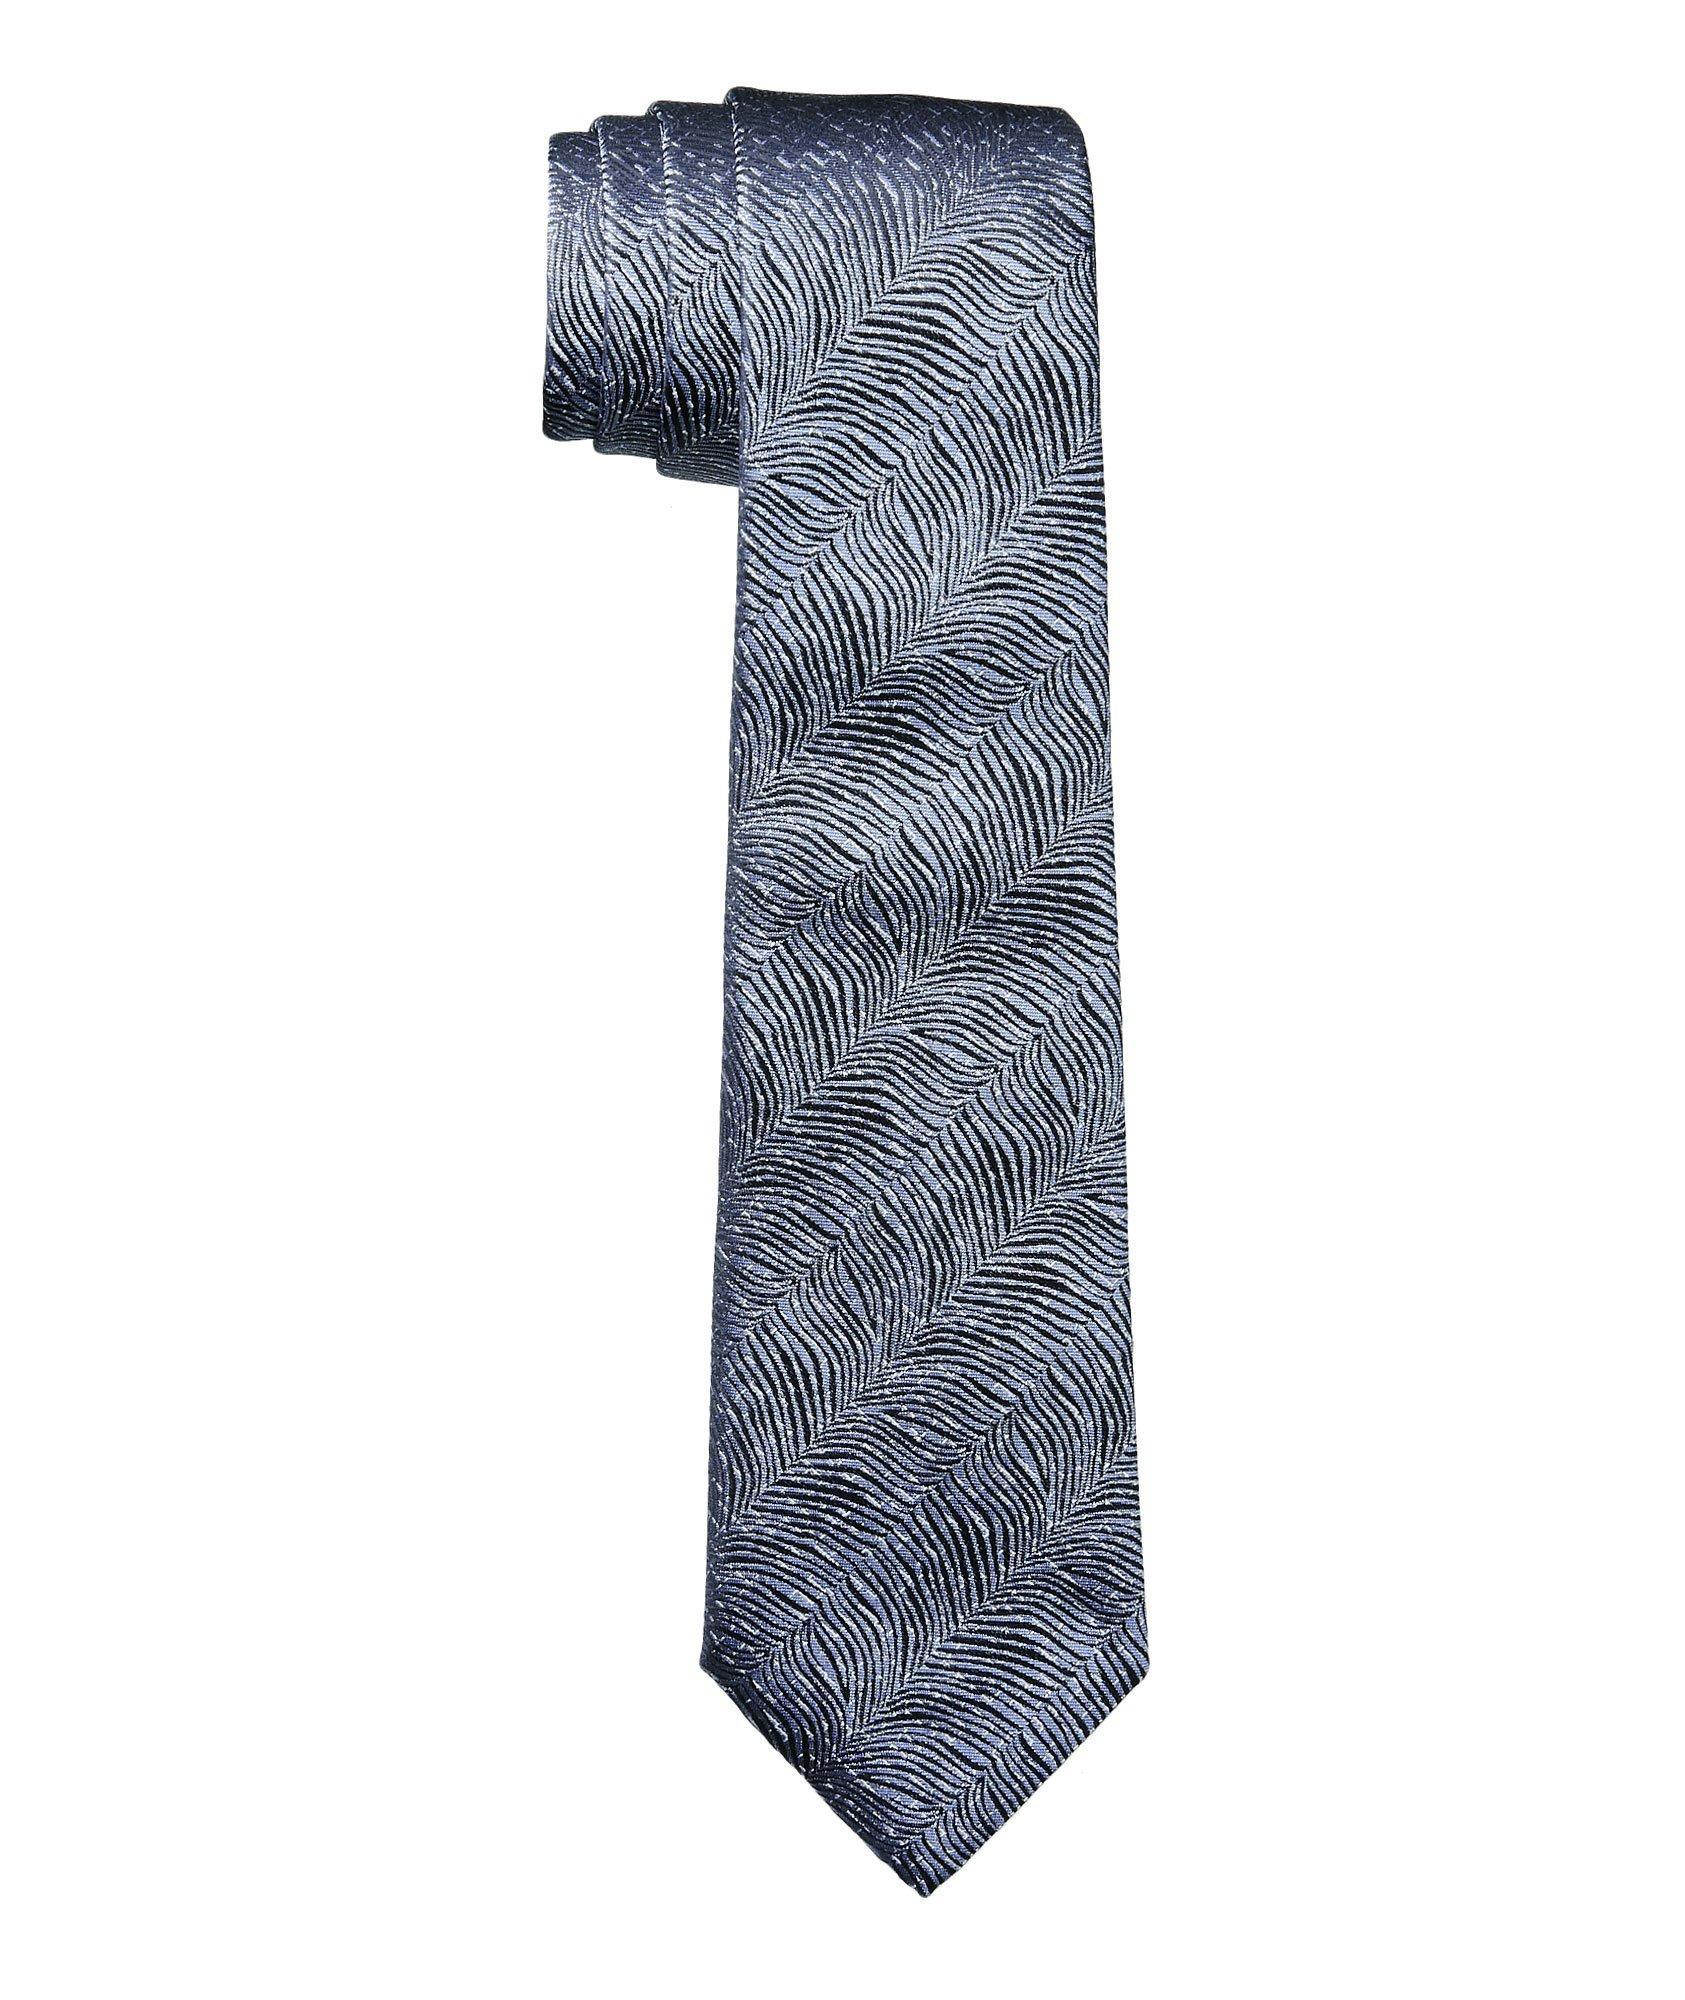 Cravate imprimée en mélange de soie image 0